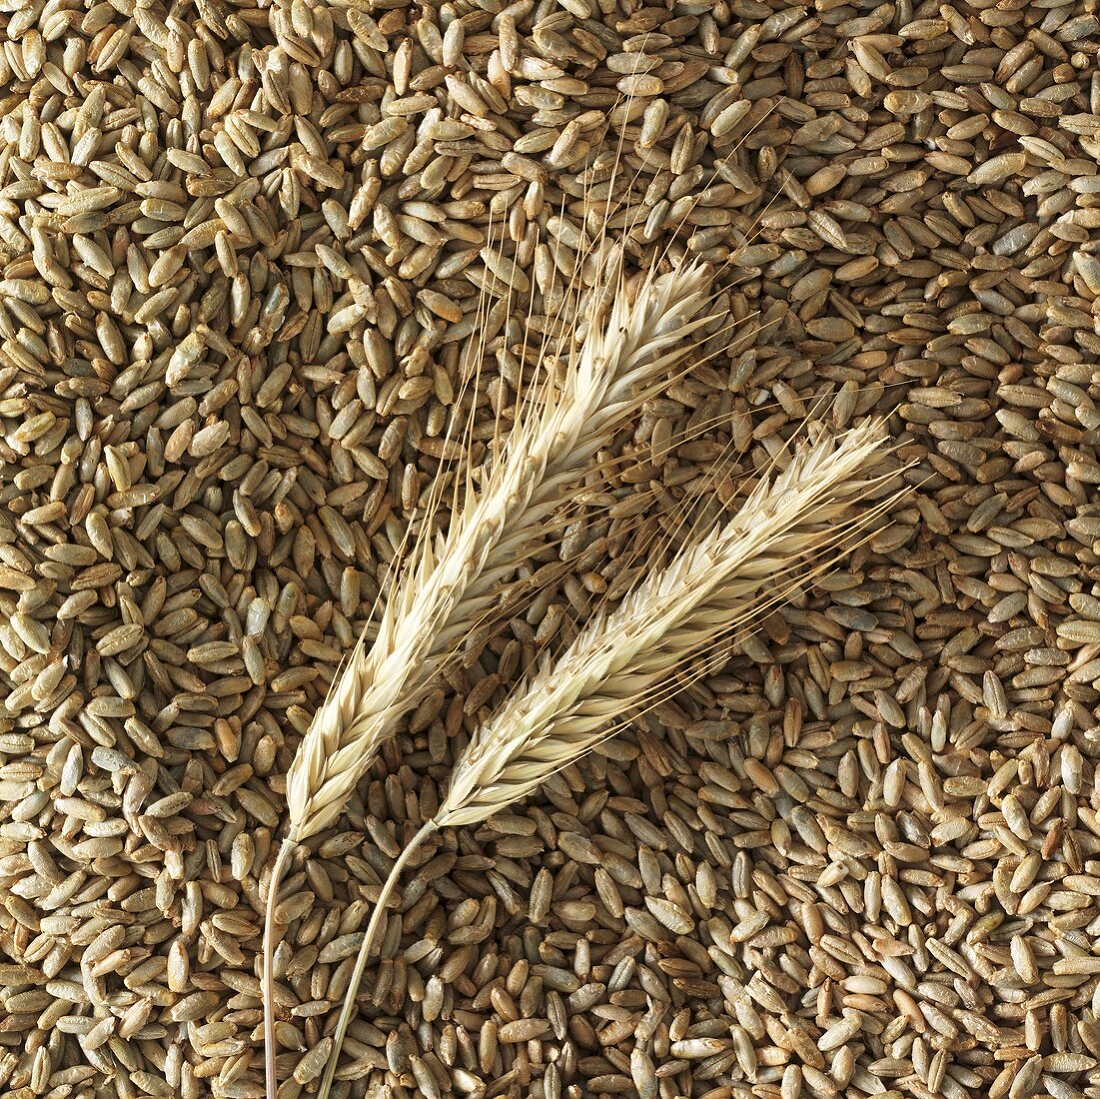 Ears of rye on rye grains